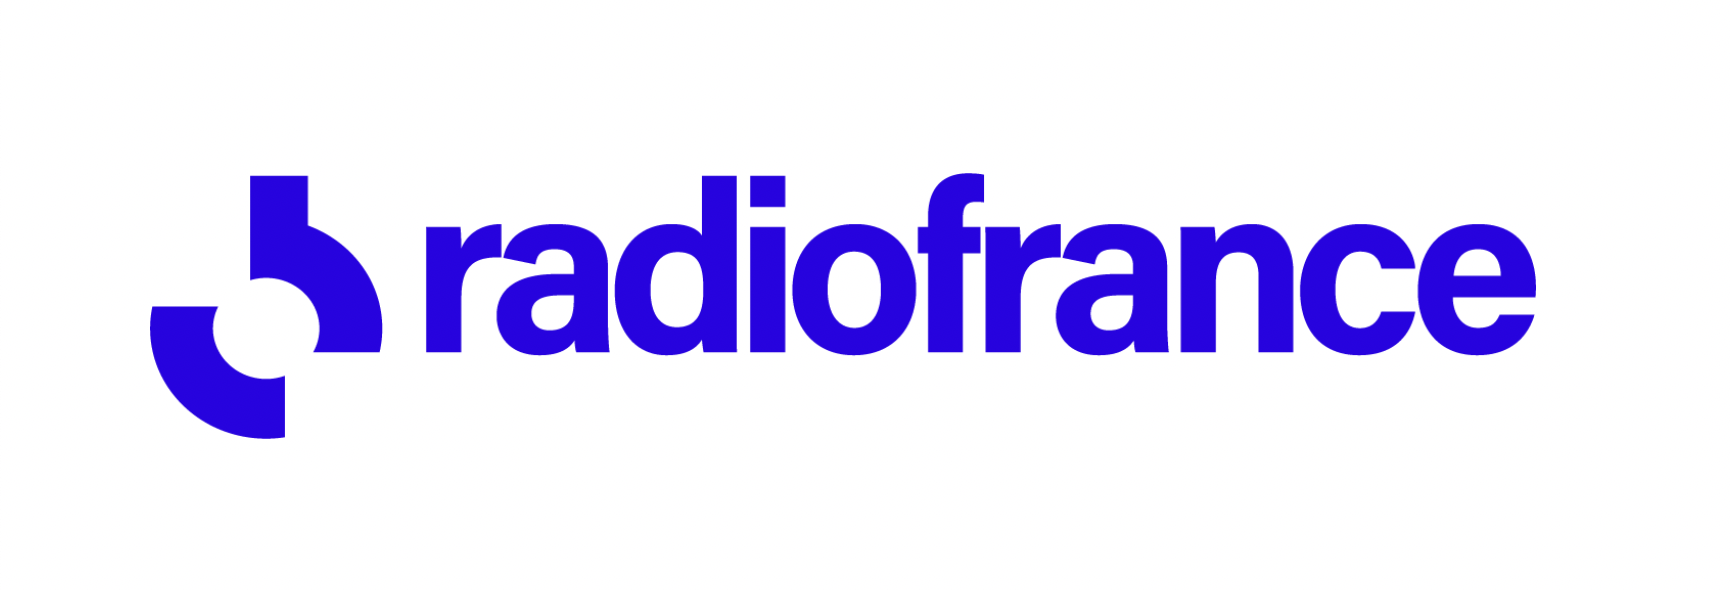 Radio France obtient la note de 98/100 à l’Index de l’égalité professionnelle